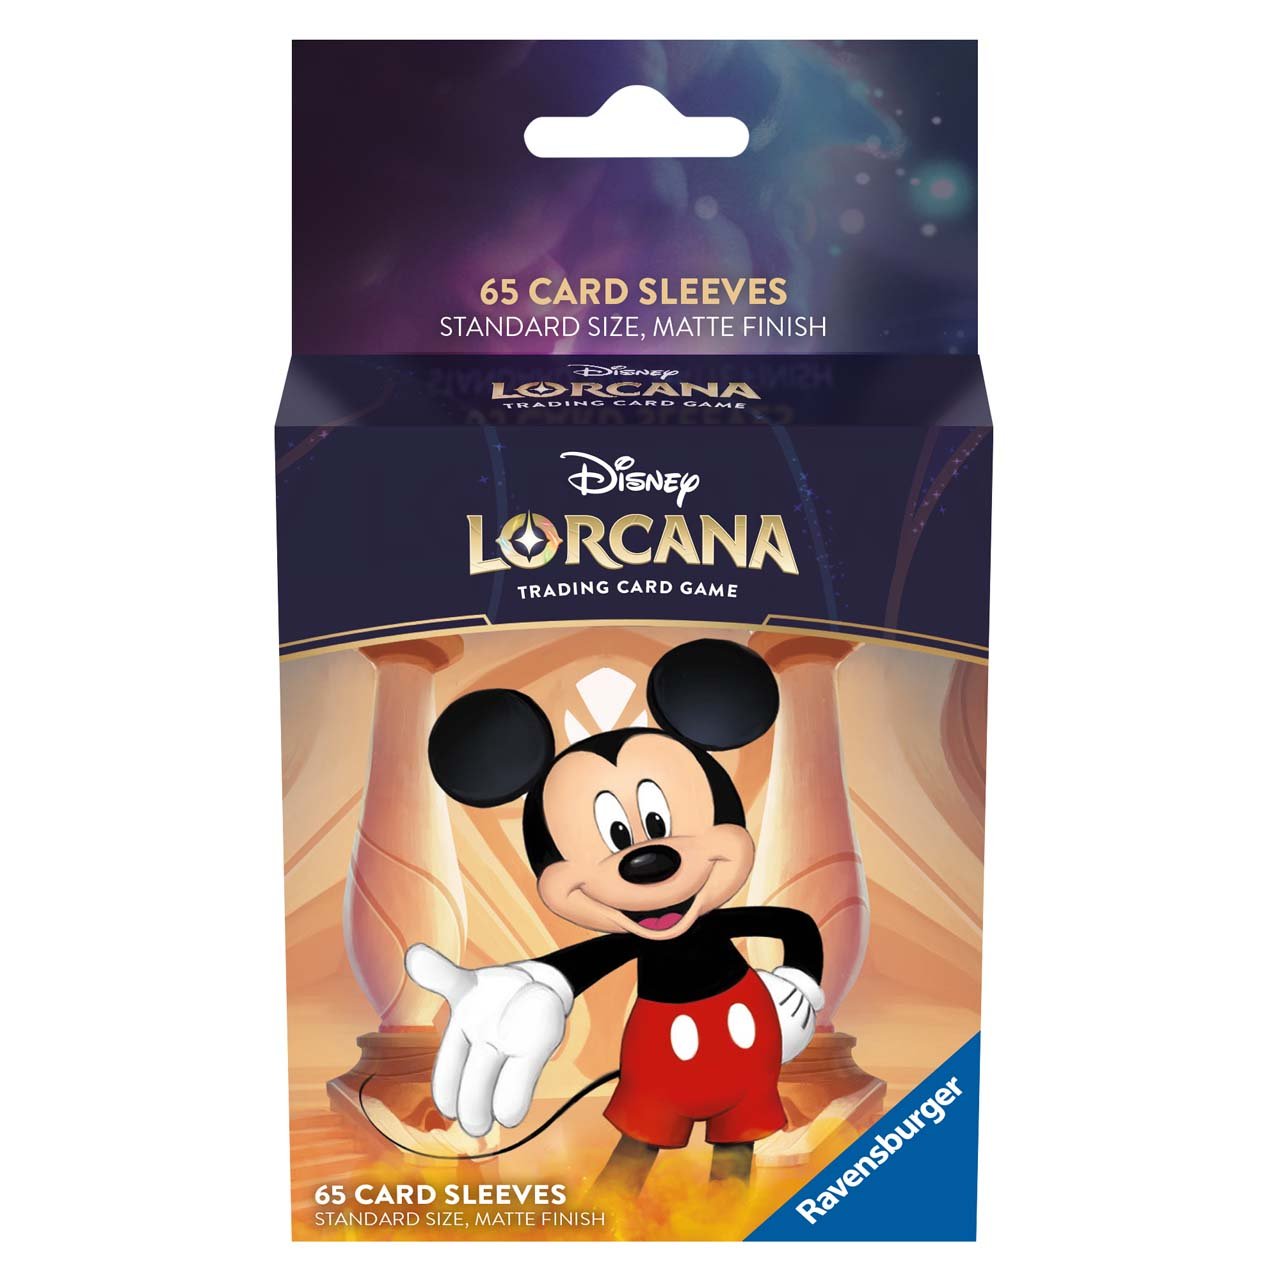 Disney Lorcana set1: Sleeves Mickey